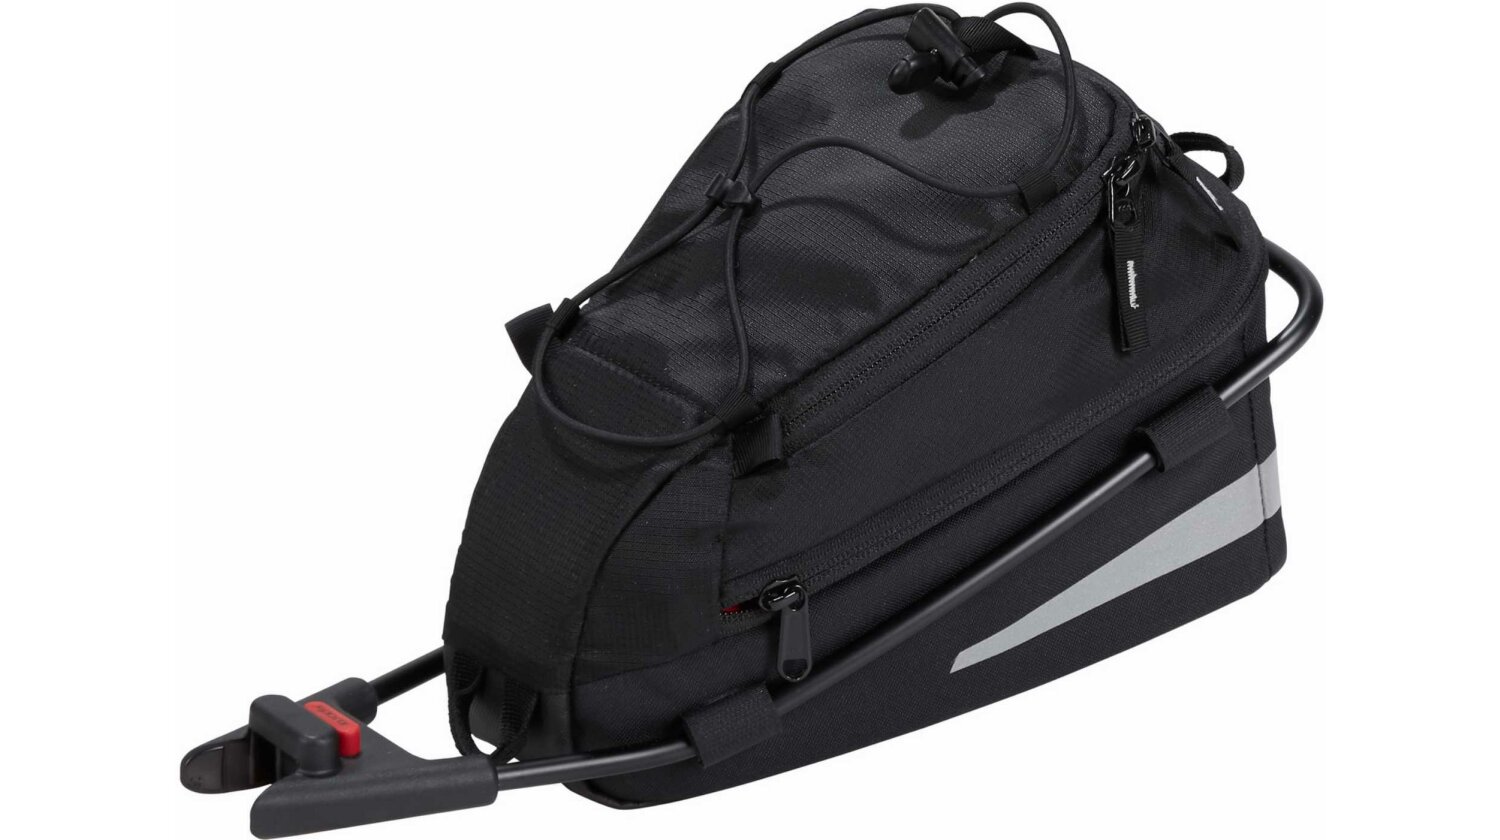 VAUDE Off Road Bag S Sattelstützentasche black